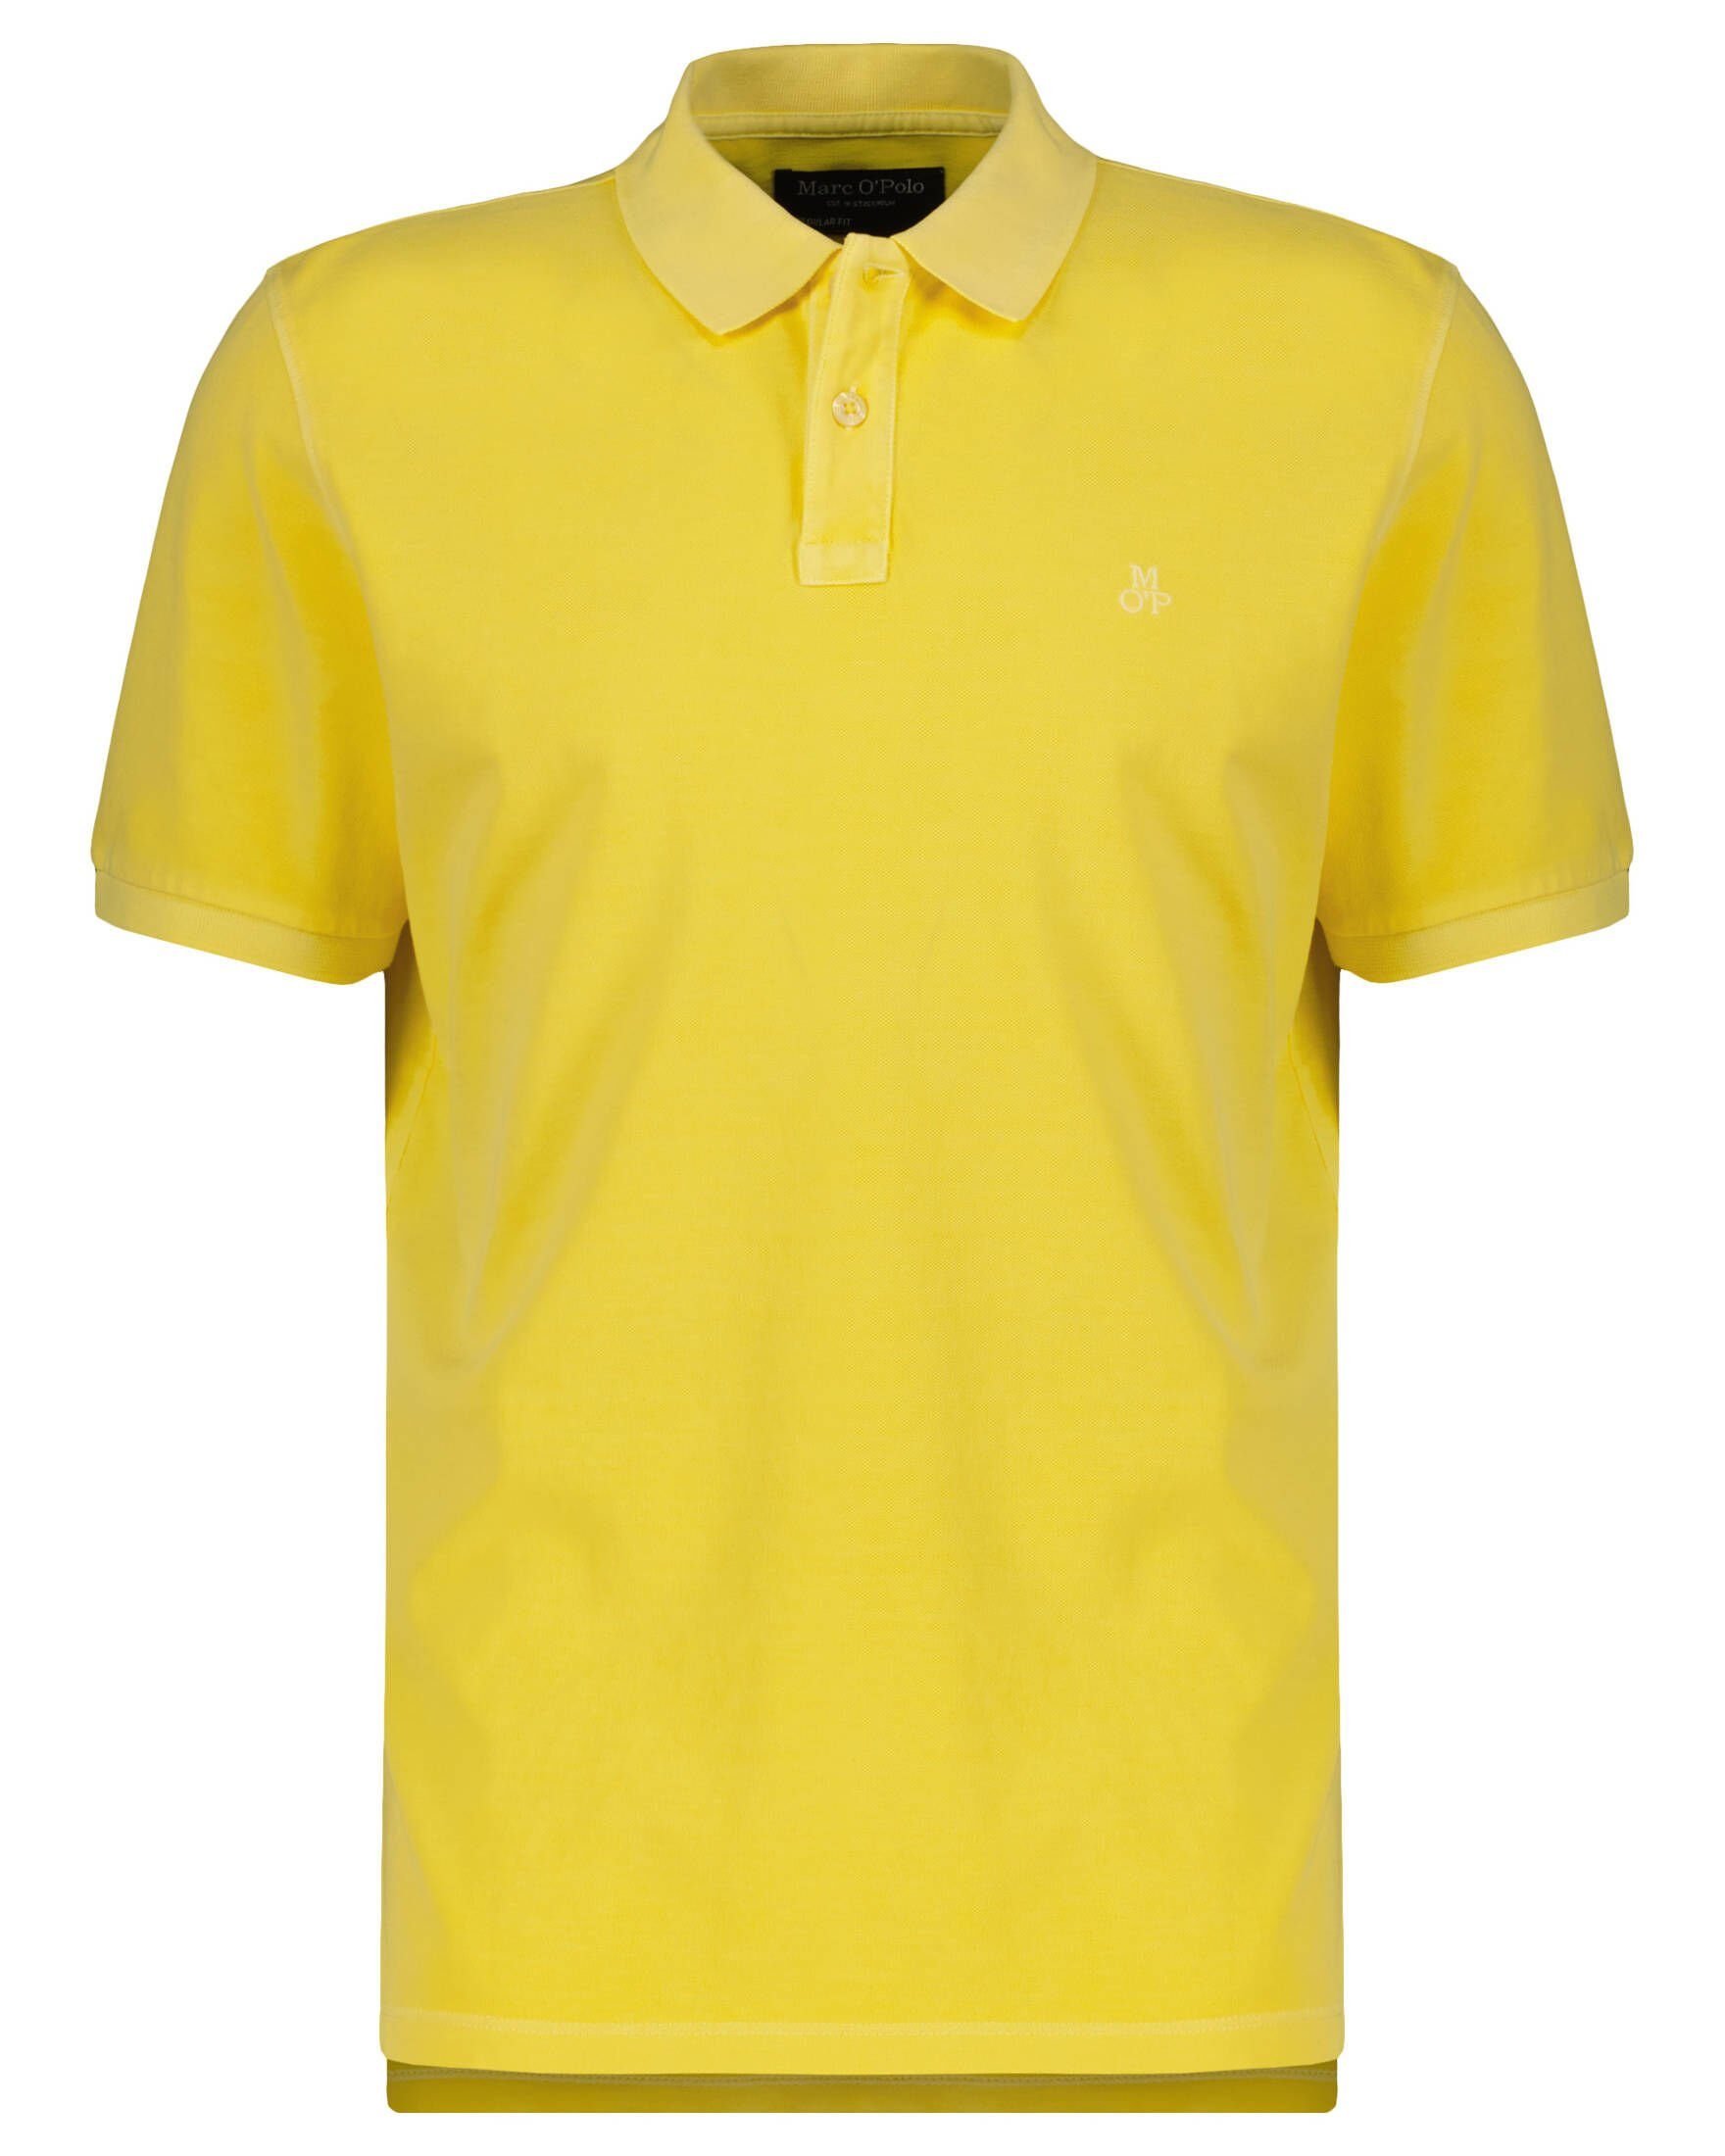 Marc O'Polo Poloshirt Herren Poloshirt (1-tlg) gelb (31)